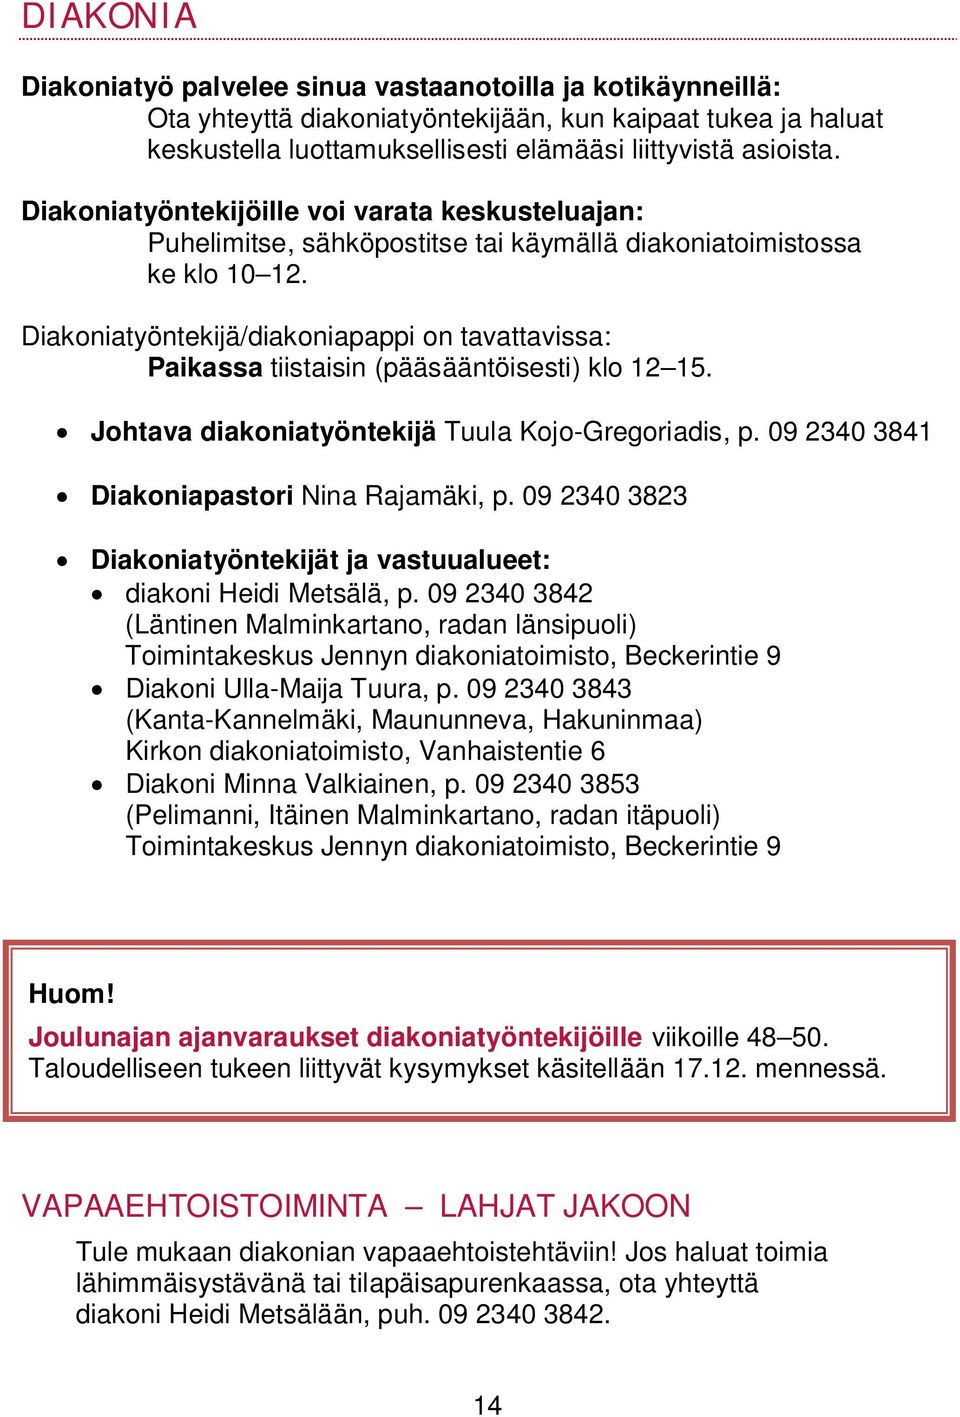 Diakoniatyöntekijä/diakoniapappi on tavattavissa: Paikassa tiistaisin (pääsääntöisesti) klo 12 15. Johtava diakoniatyöntekijä Tuula Kojo-Gregoriadis, p. 09 2340 3841 Diakoniapastori Nina Rajamäki, p.